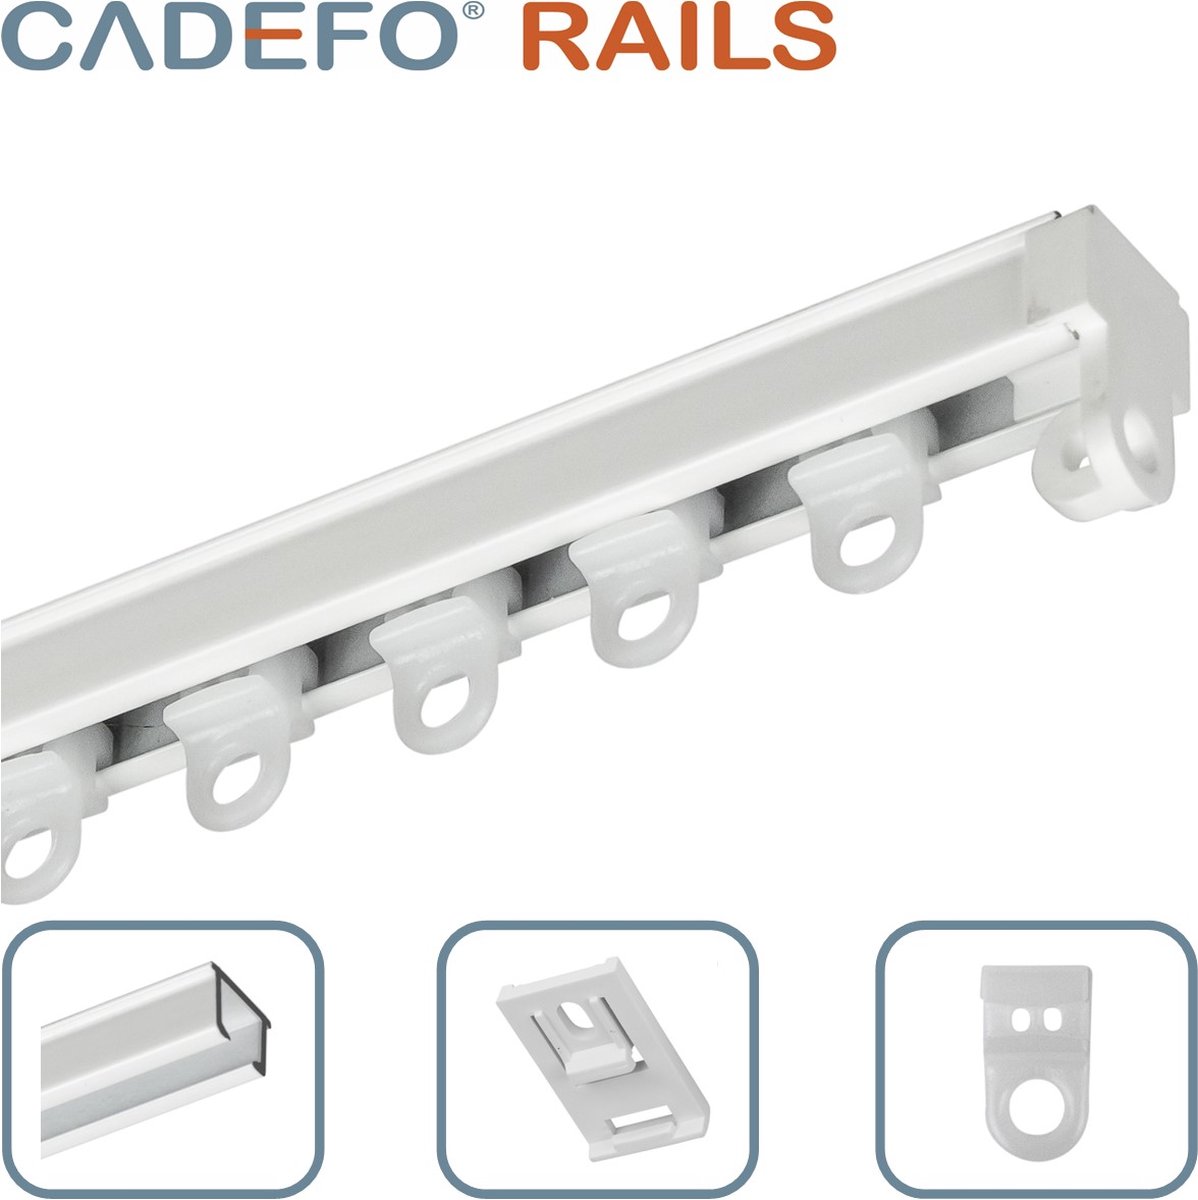 CADEFO RAILS (201 - 250 cm) Gordijnrails - Compleet op maat! - UIT 1 STUK - Leverbaar tot 6 meter - Plafondbevestiging - Lengte 222 cm